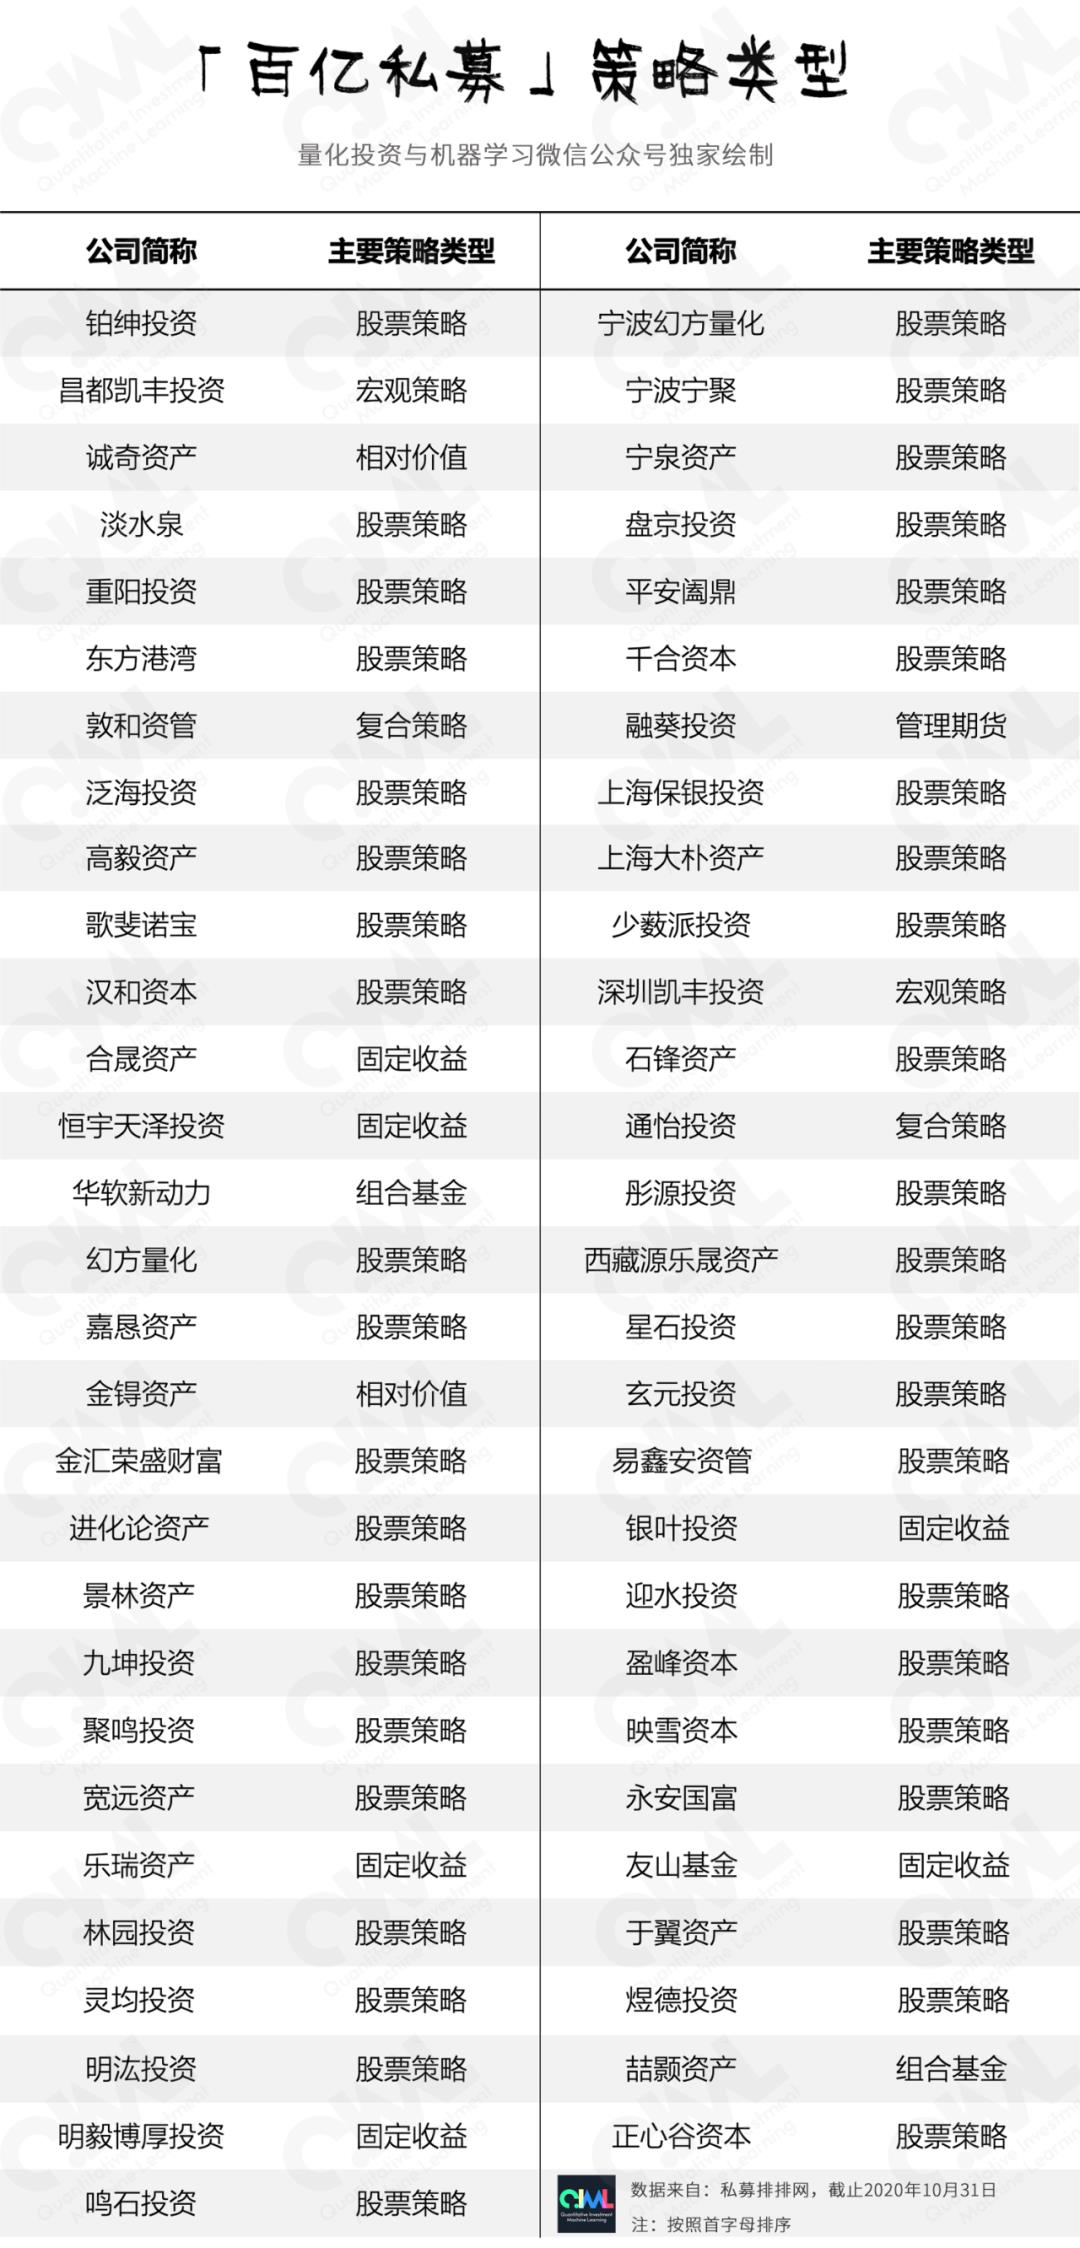 中国十大私募基金排名 私募排排网排名